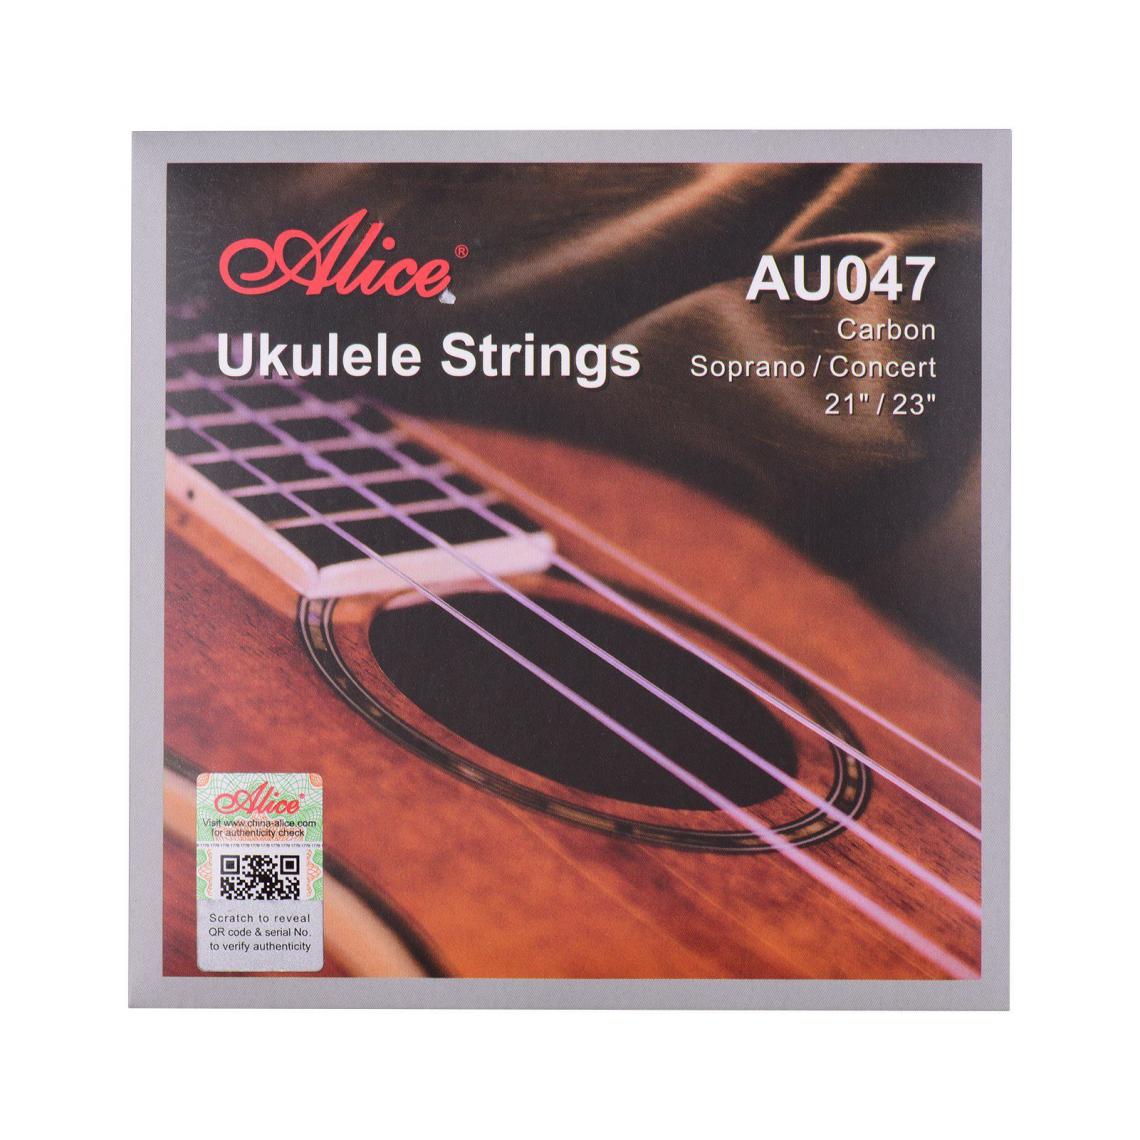 Justgreenbox - Ukulele Strings Carbon Soprano Concert String Set pour de 21 pouces à 23 - 1005001781394739 - Cordes